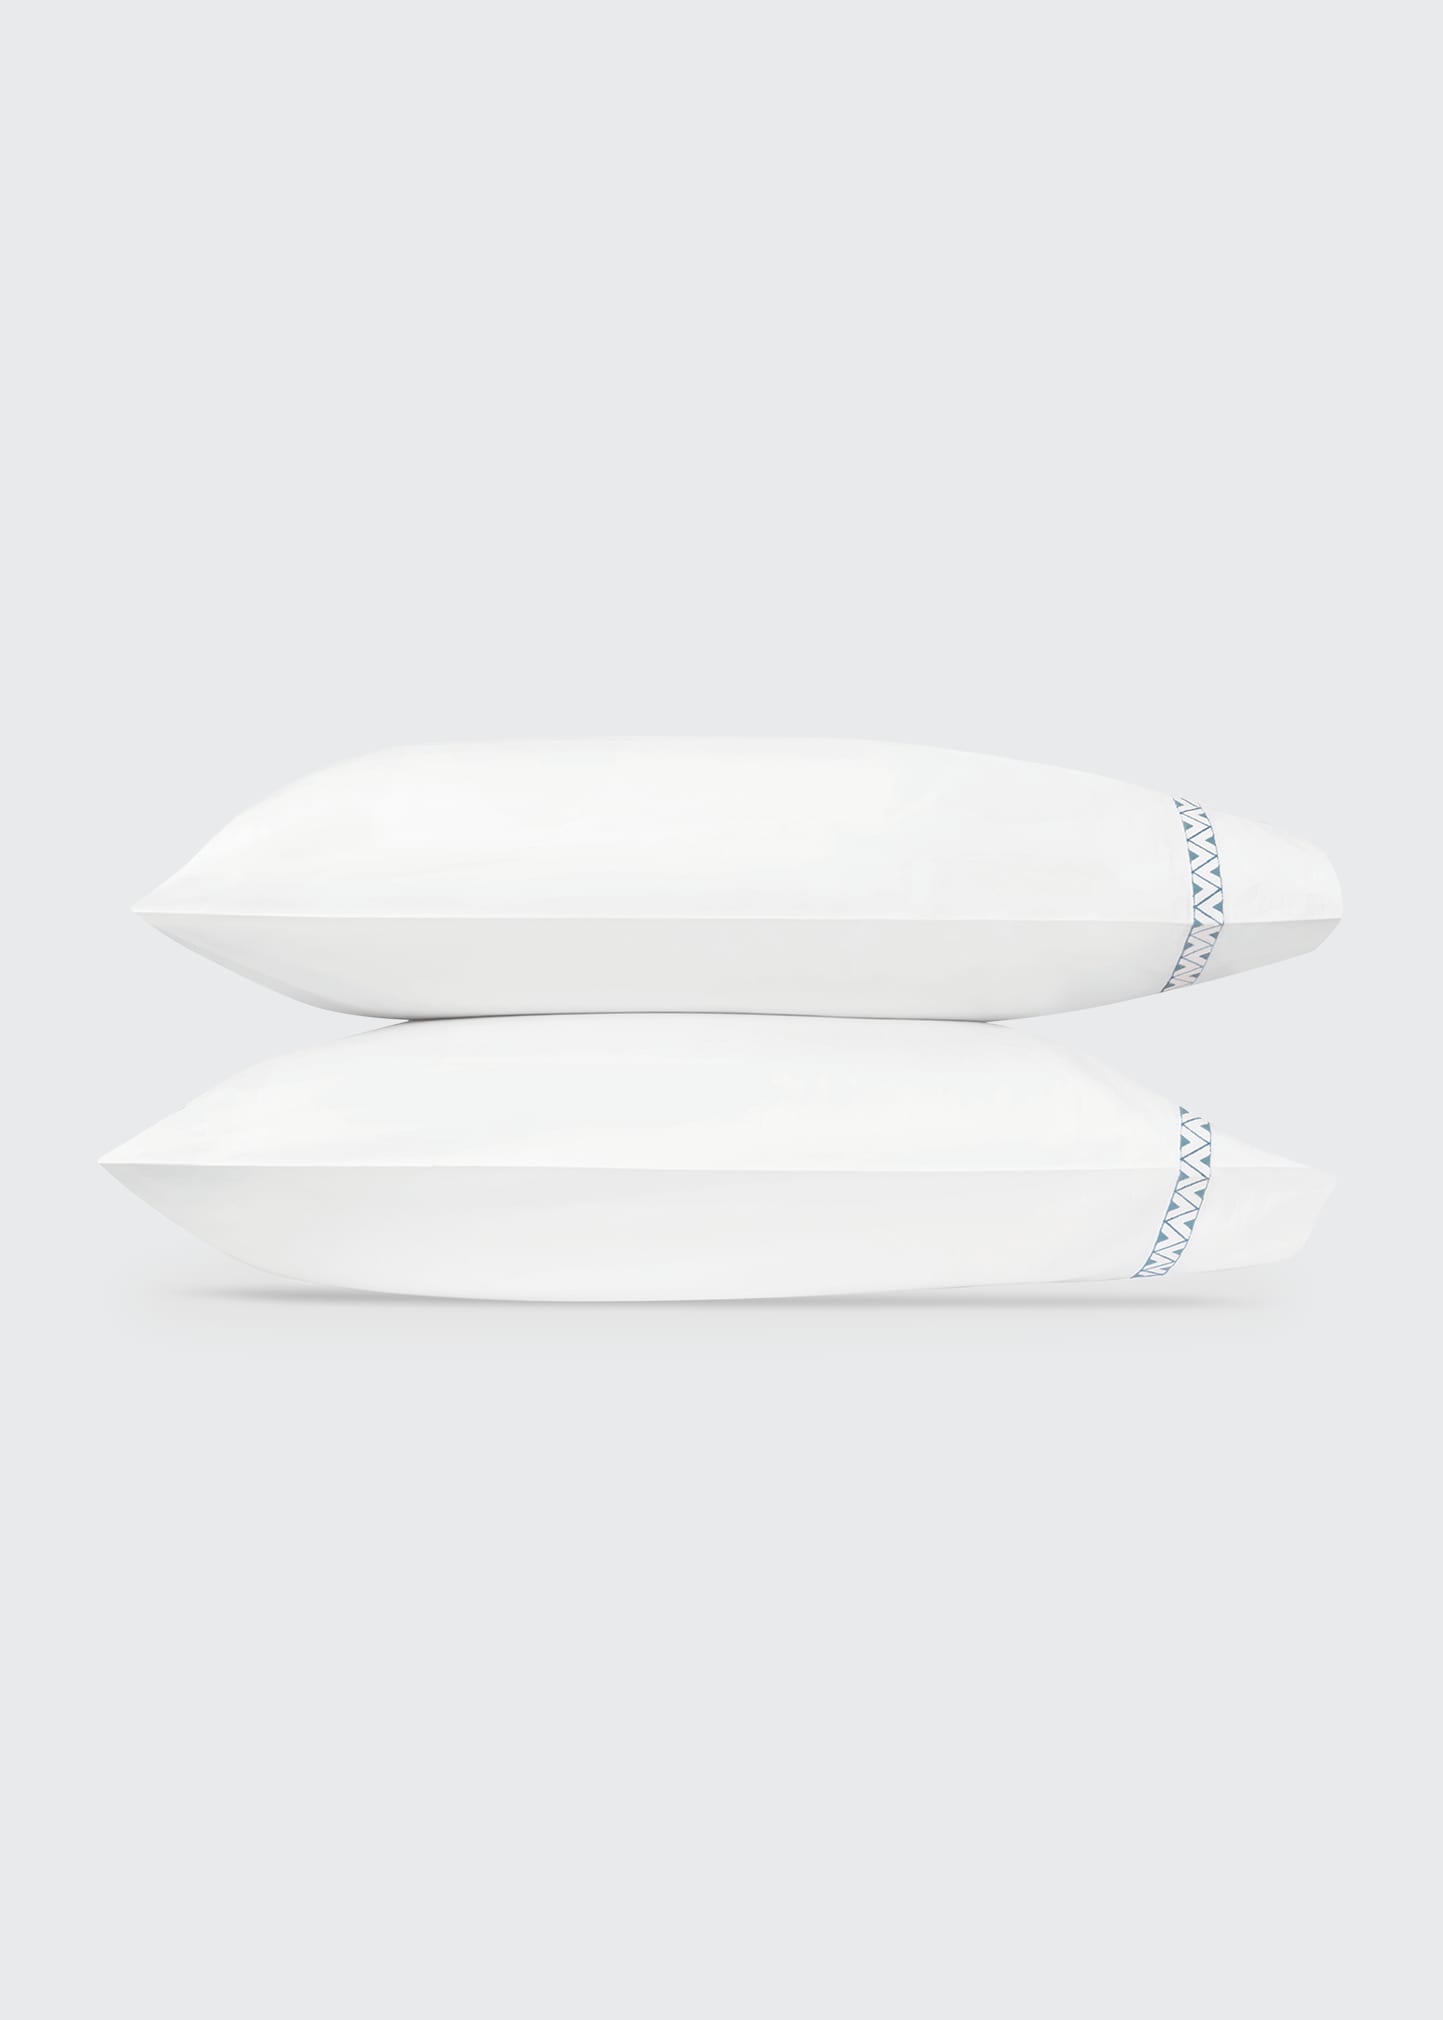 Prado King Pillowcases - Pair